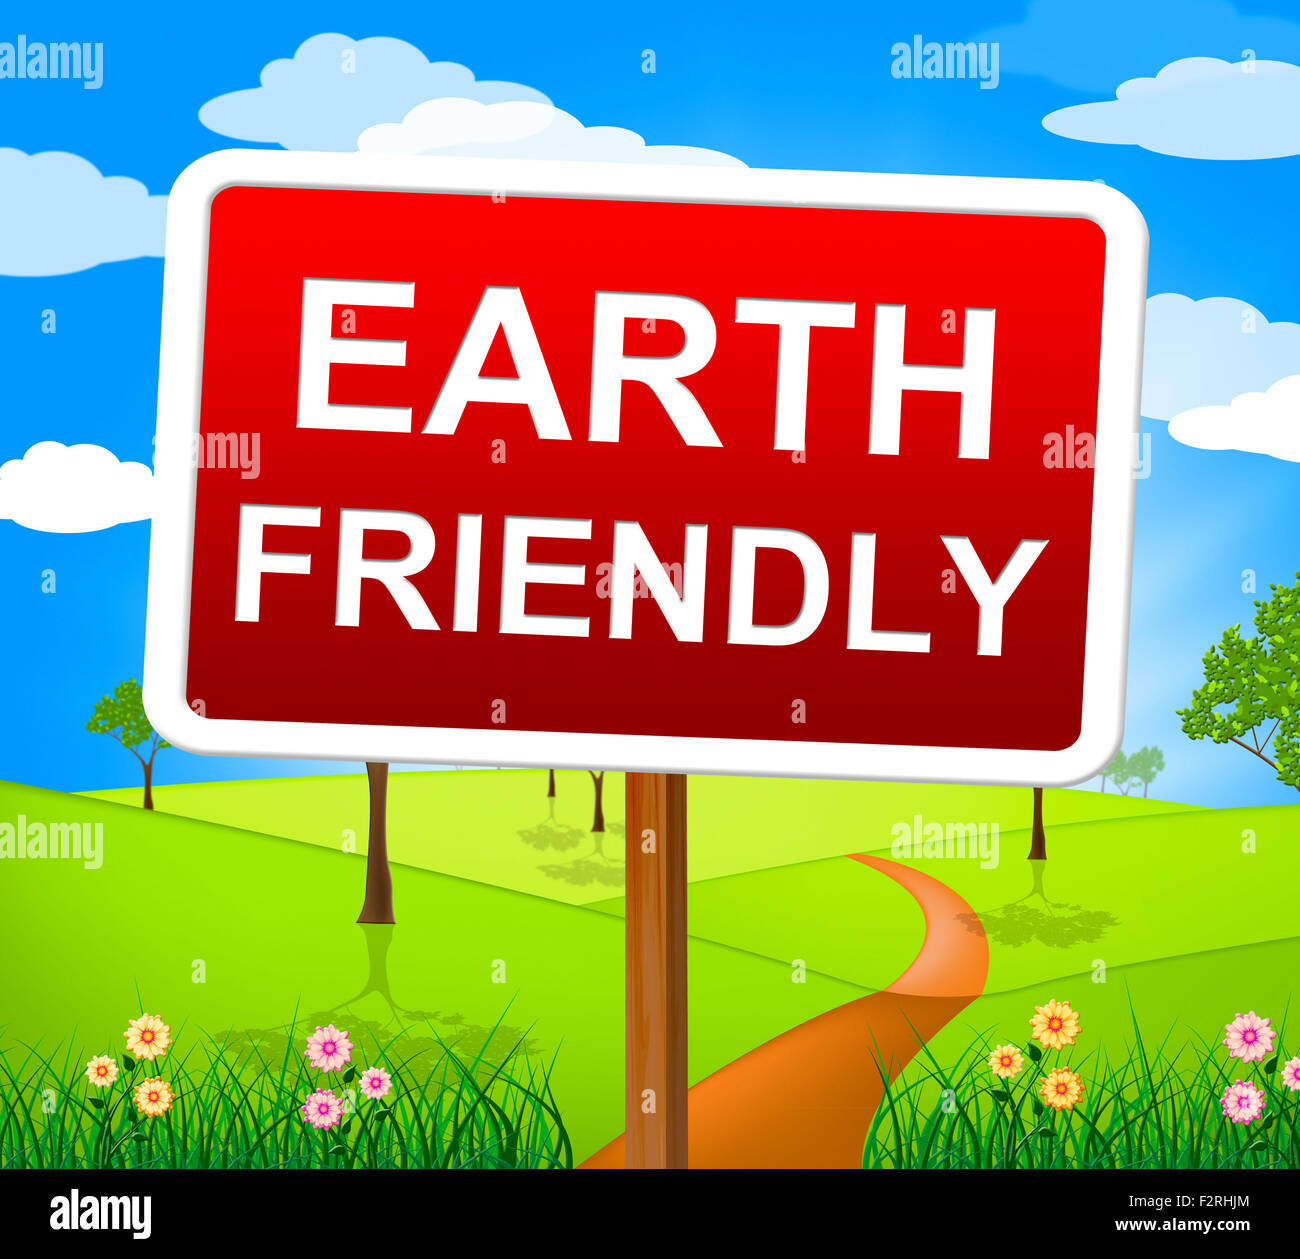 Earth Friendly Représentant de l'écosystème naturel et recyclable Banque D'Images